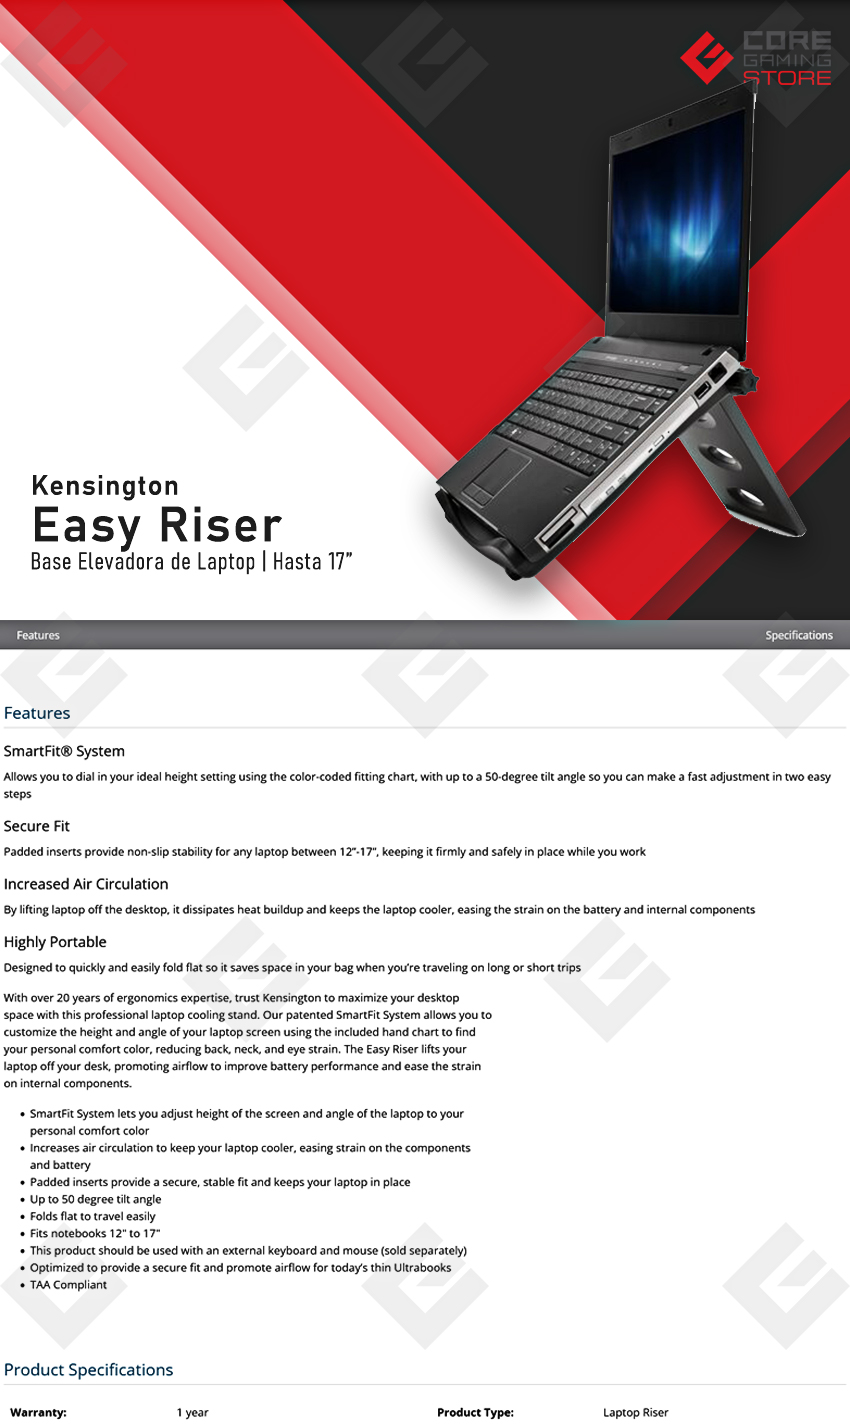 Soporte de Enfriamiento para Computadora Kensington SmartFit Easy Riser | Hasta 17" - K60112AM 